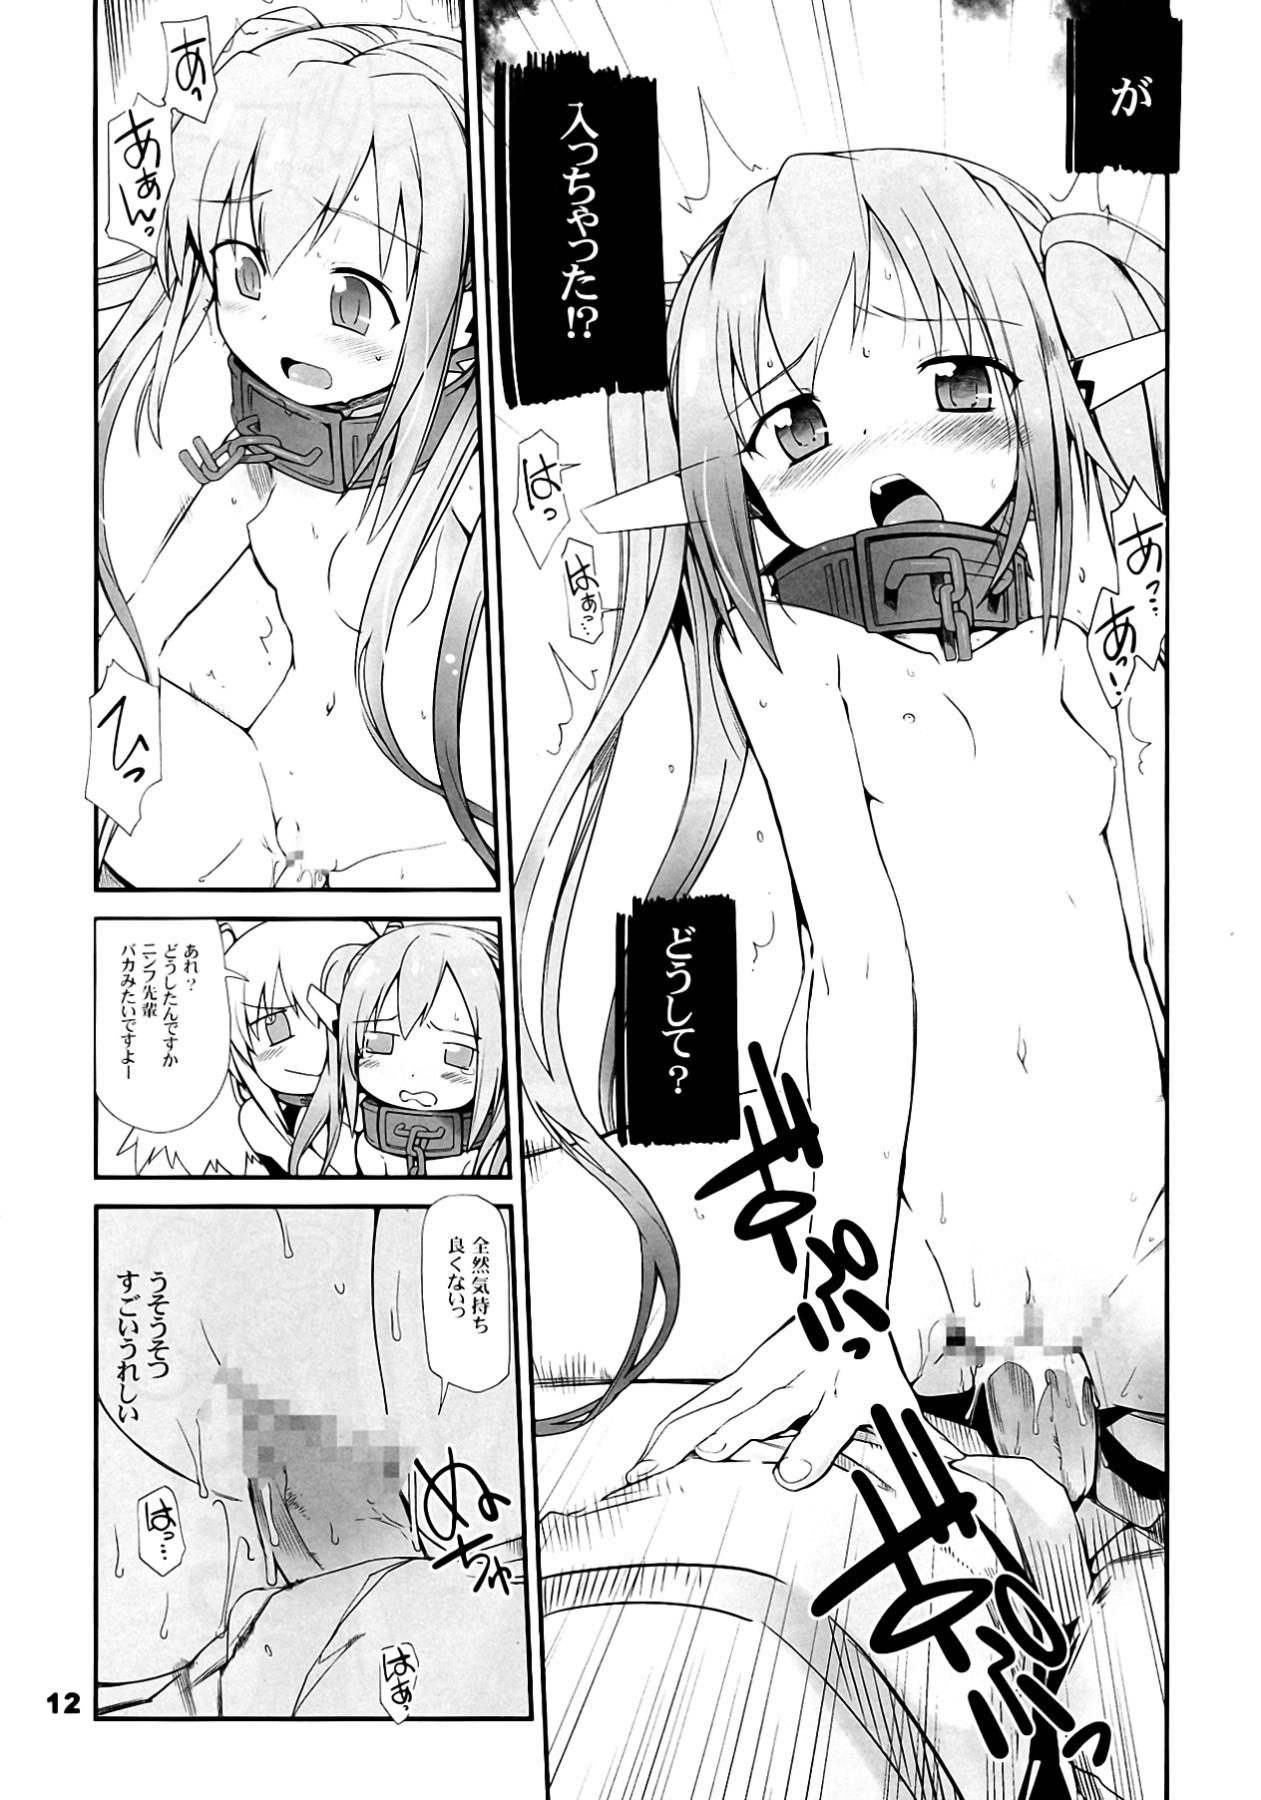 Lingerie Angeloid Maji Tenshi - Sora no otoshimono Tetona - Page 12